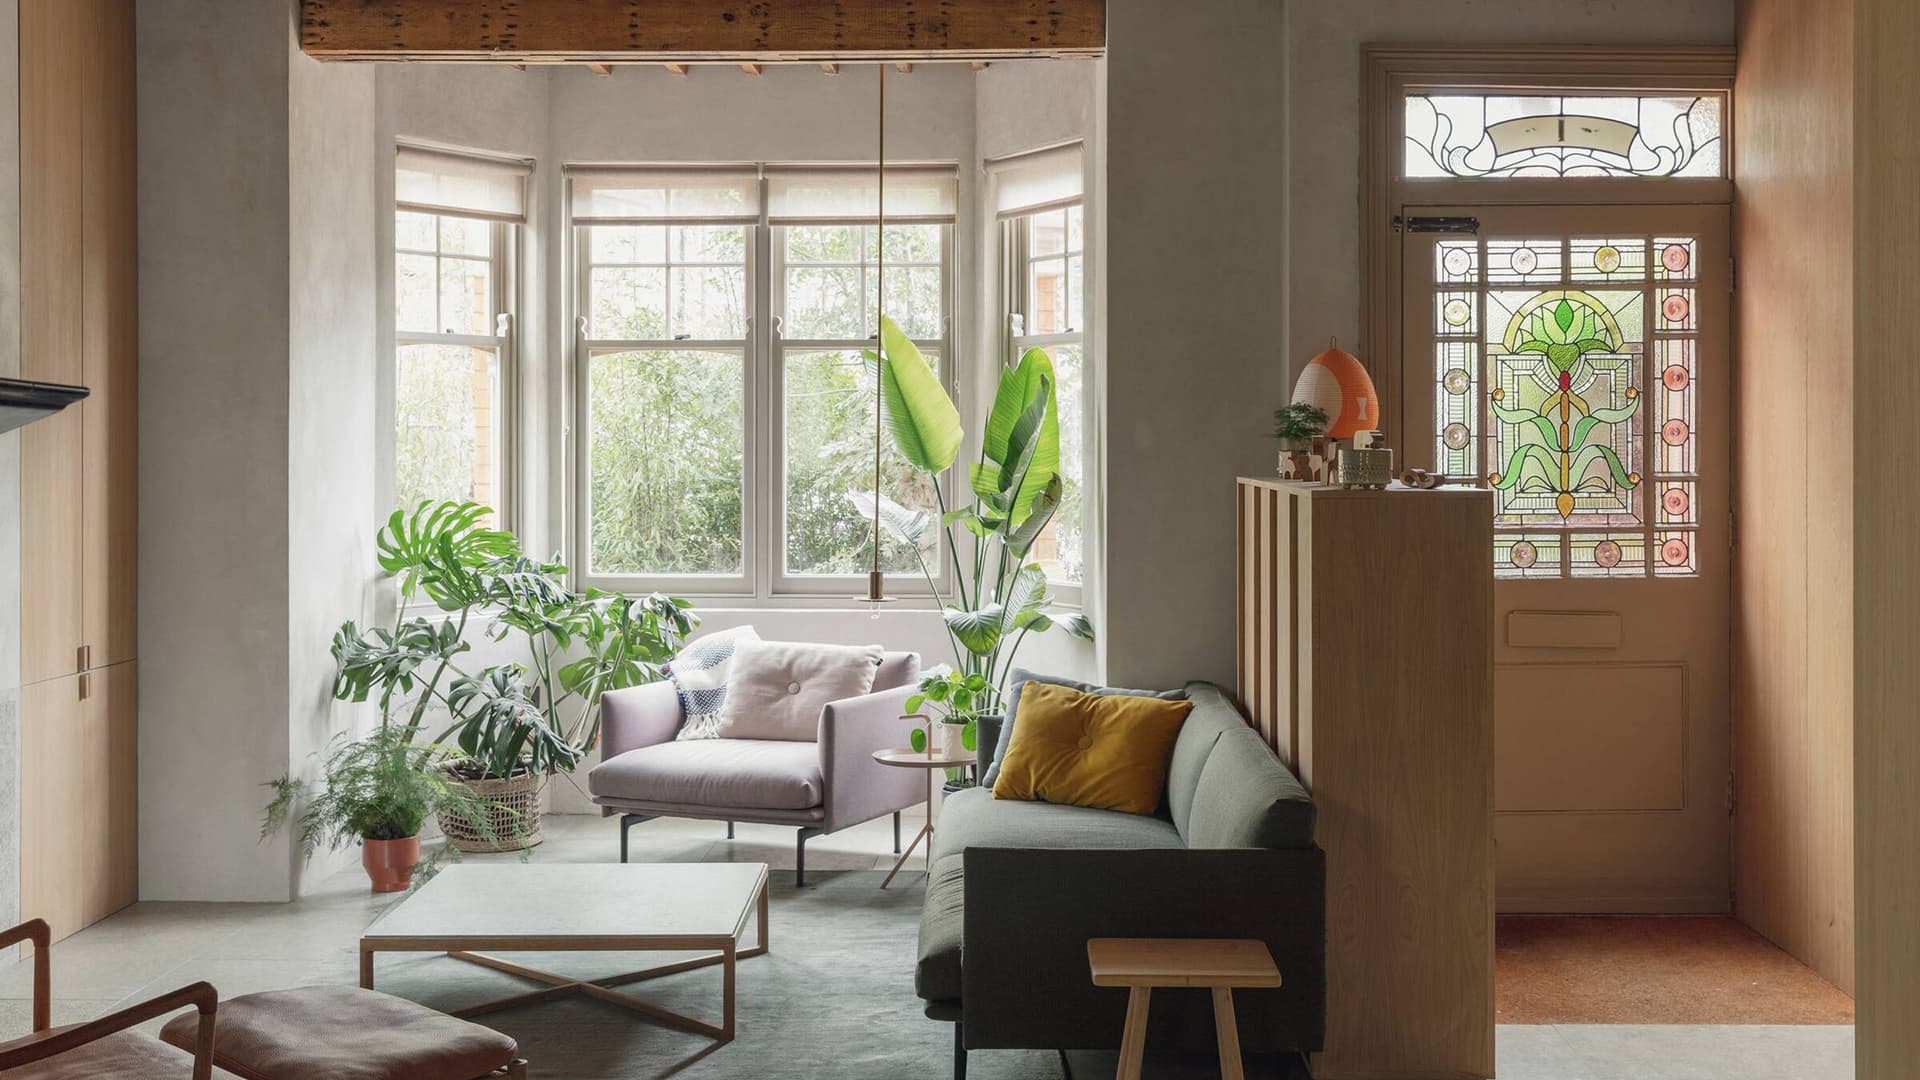 Философия устойчивого дизайна в интерьере жилого дома – проект Architecture for London